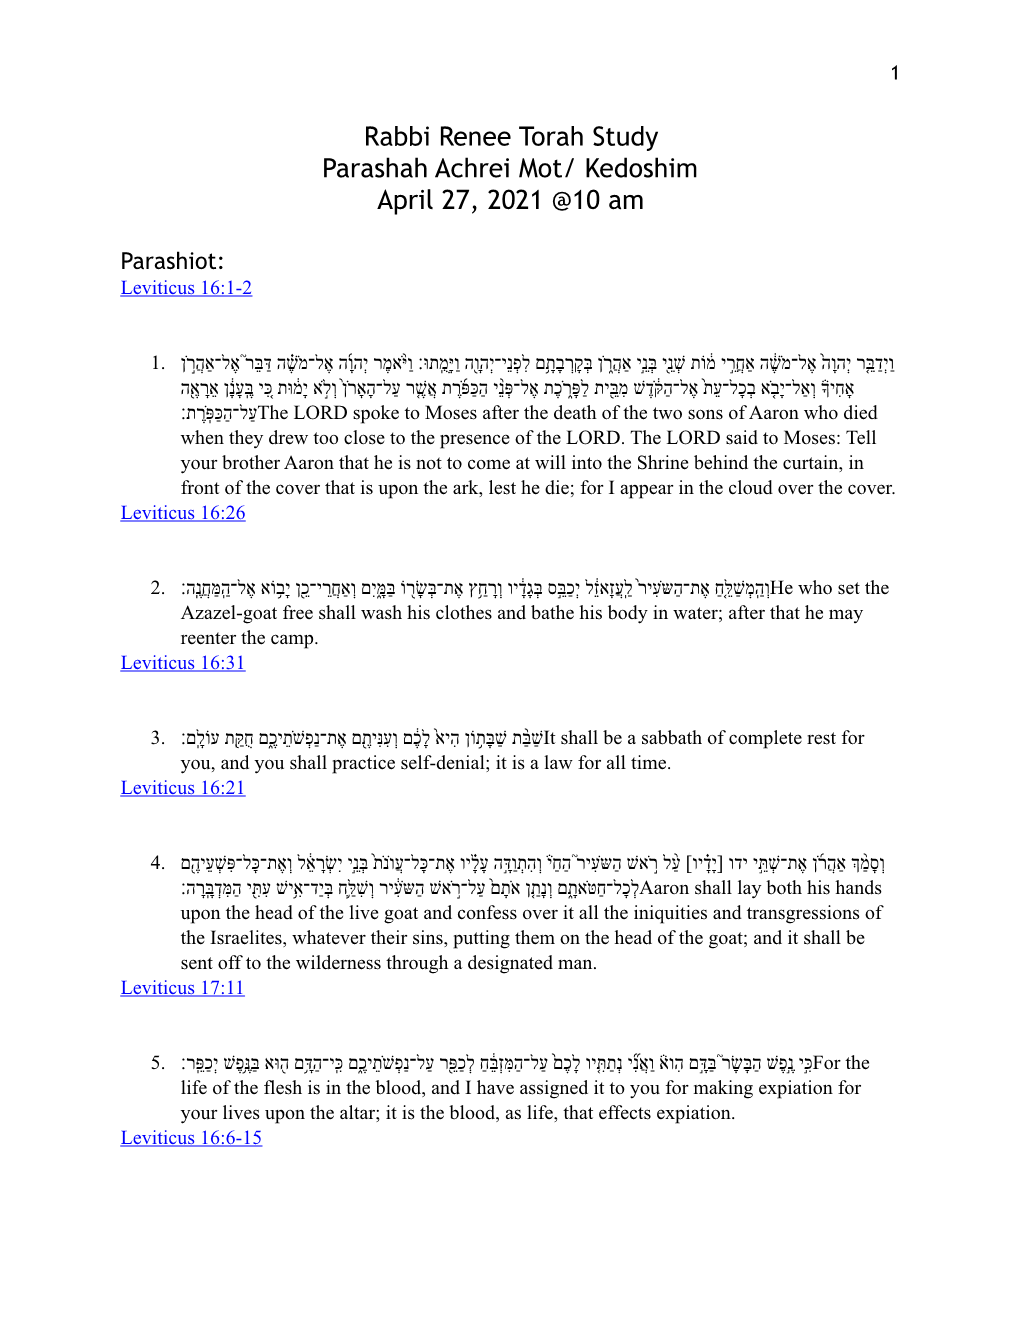 Rabbi Renee Torah Study Parashah Achrei Mot/ Kedoshim April 27, 2021 @10 Am